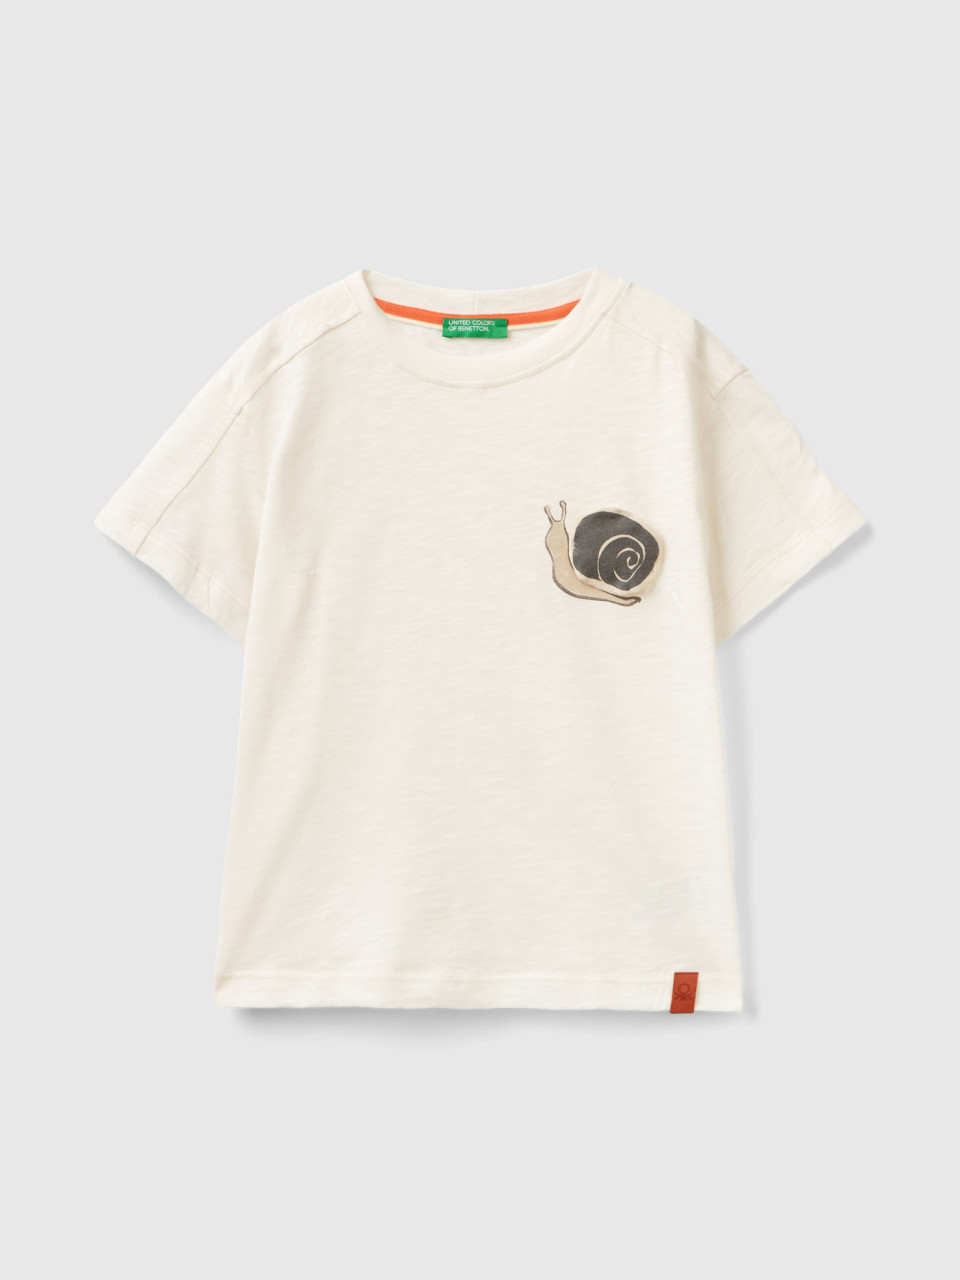 Benetton, Camiseta Con Estampado Y Aplicación, Blanco Crema, Niños